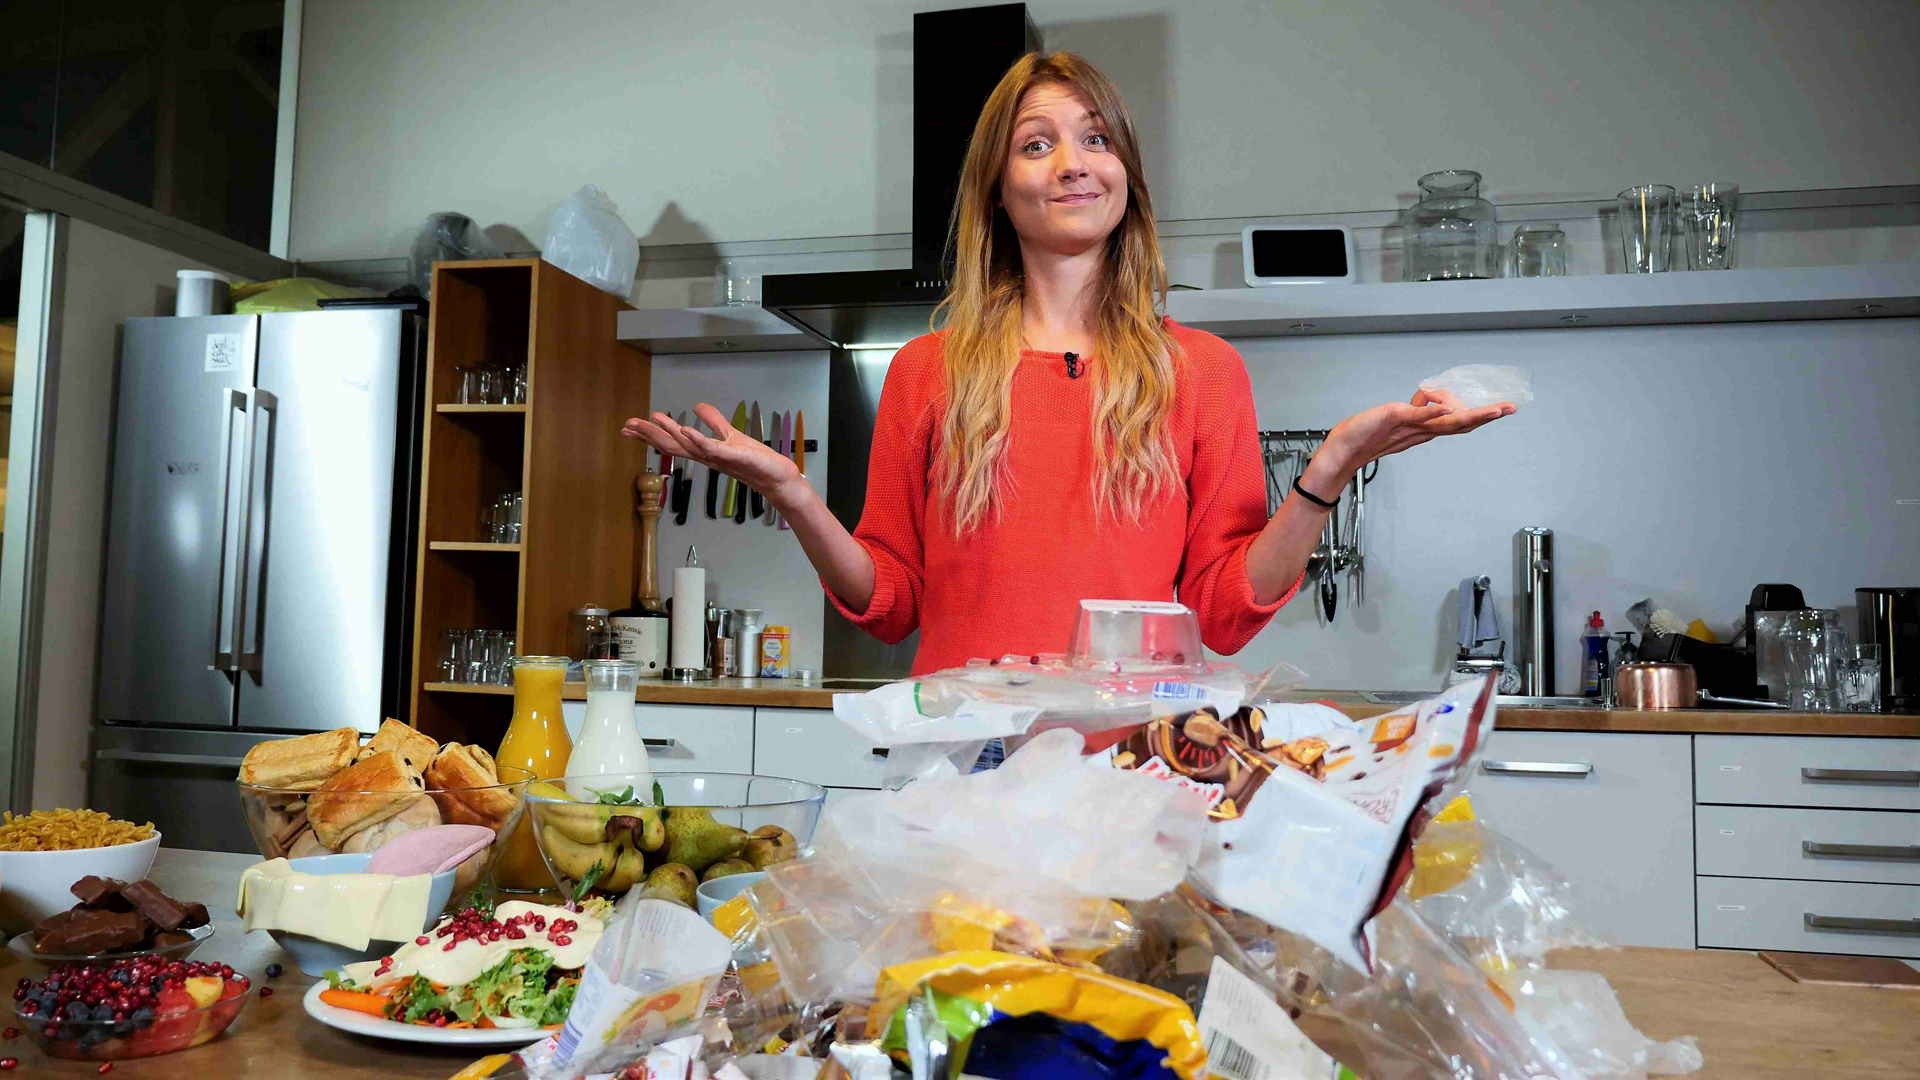 Jana steht hinter einem Küchentisch voller Lebensmittel und Plastikverpackungen.